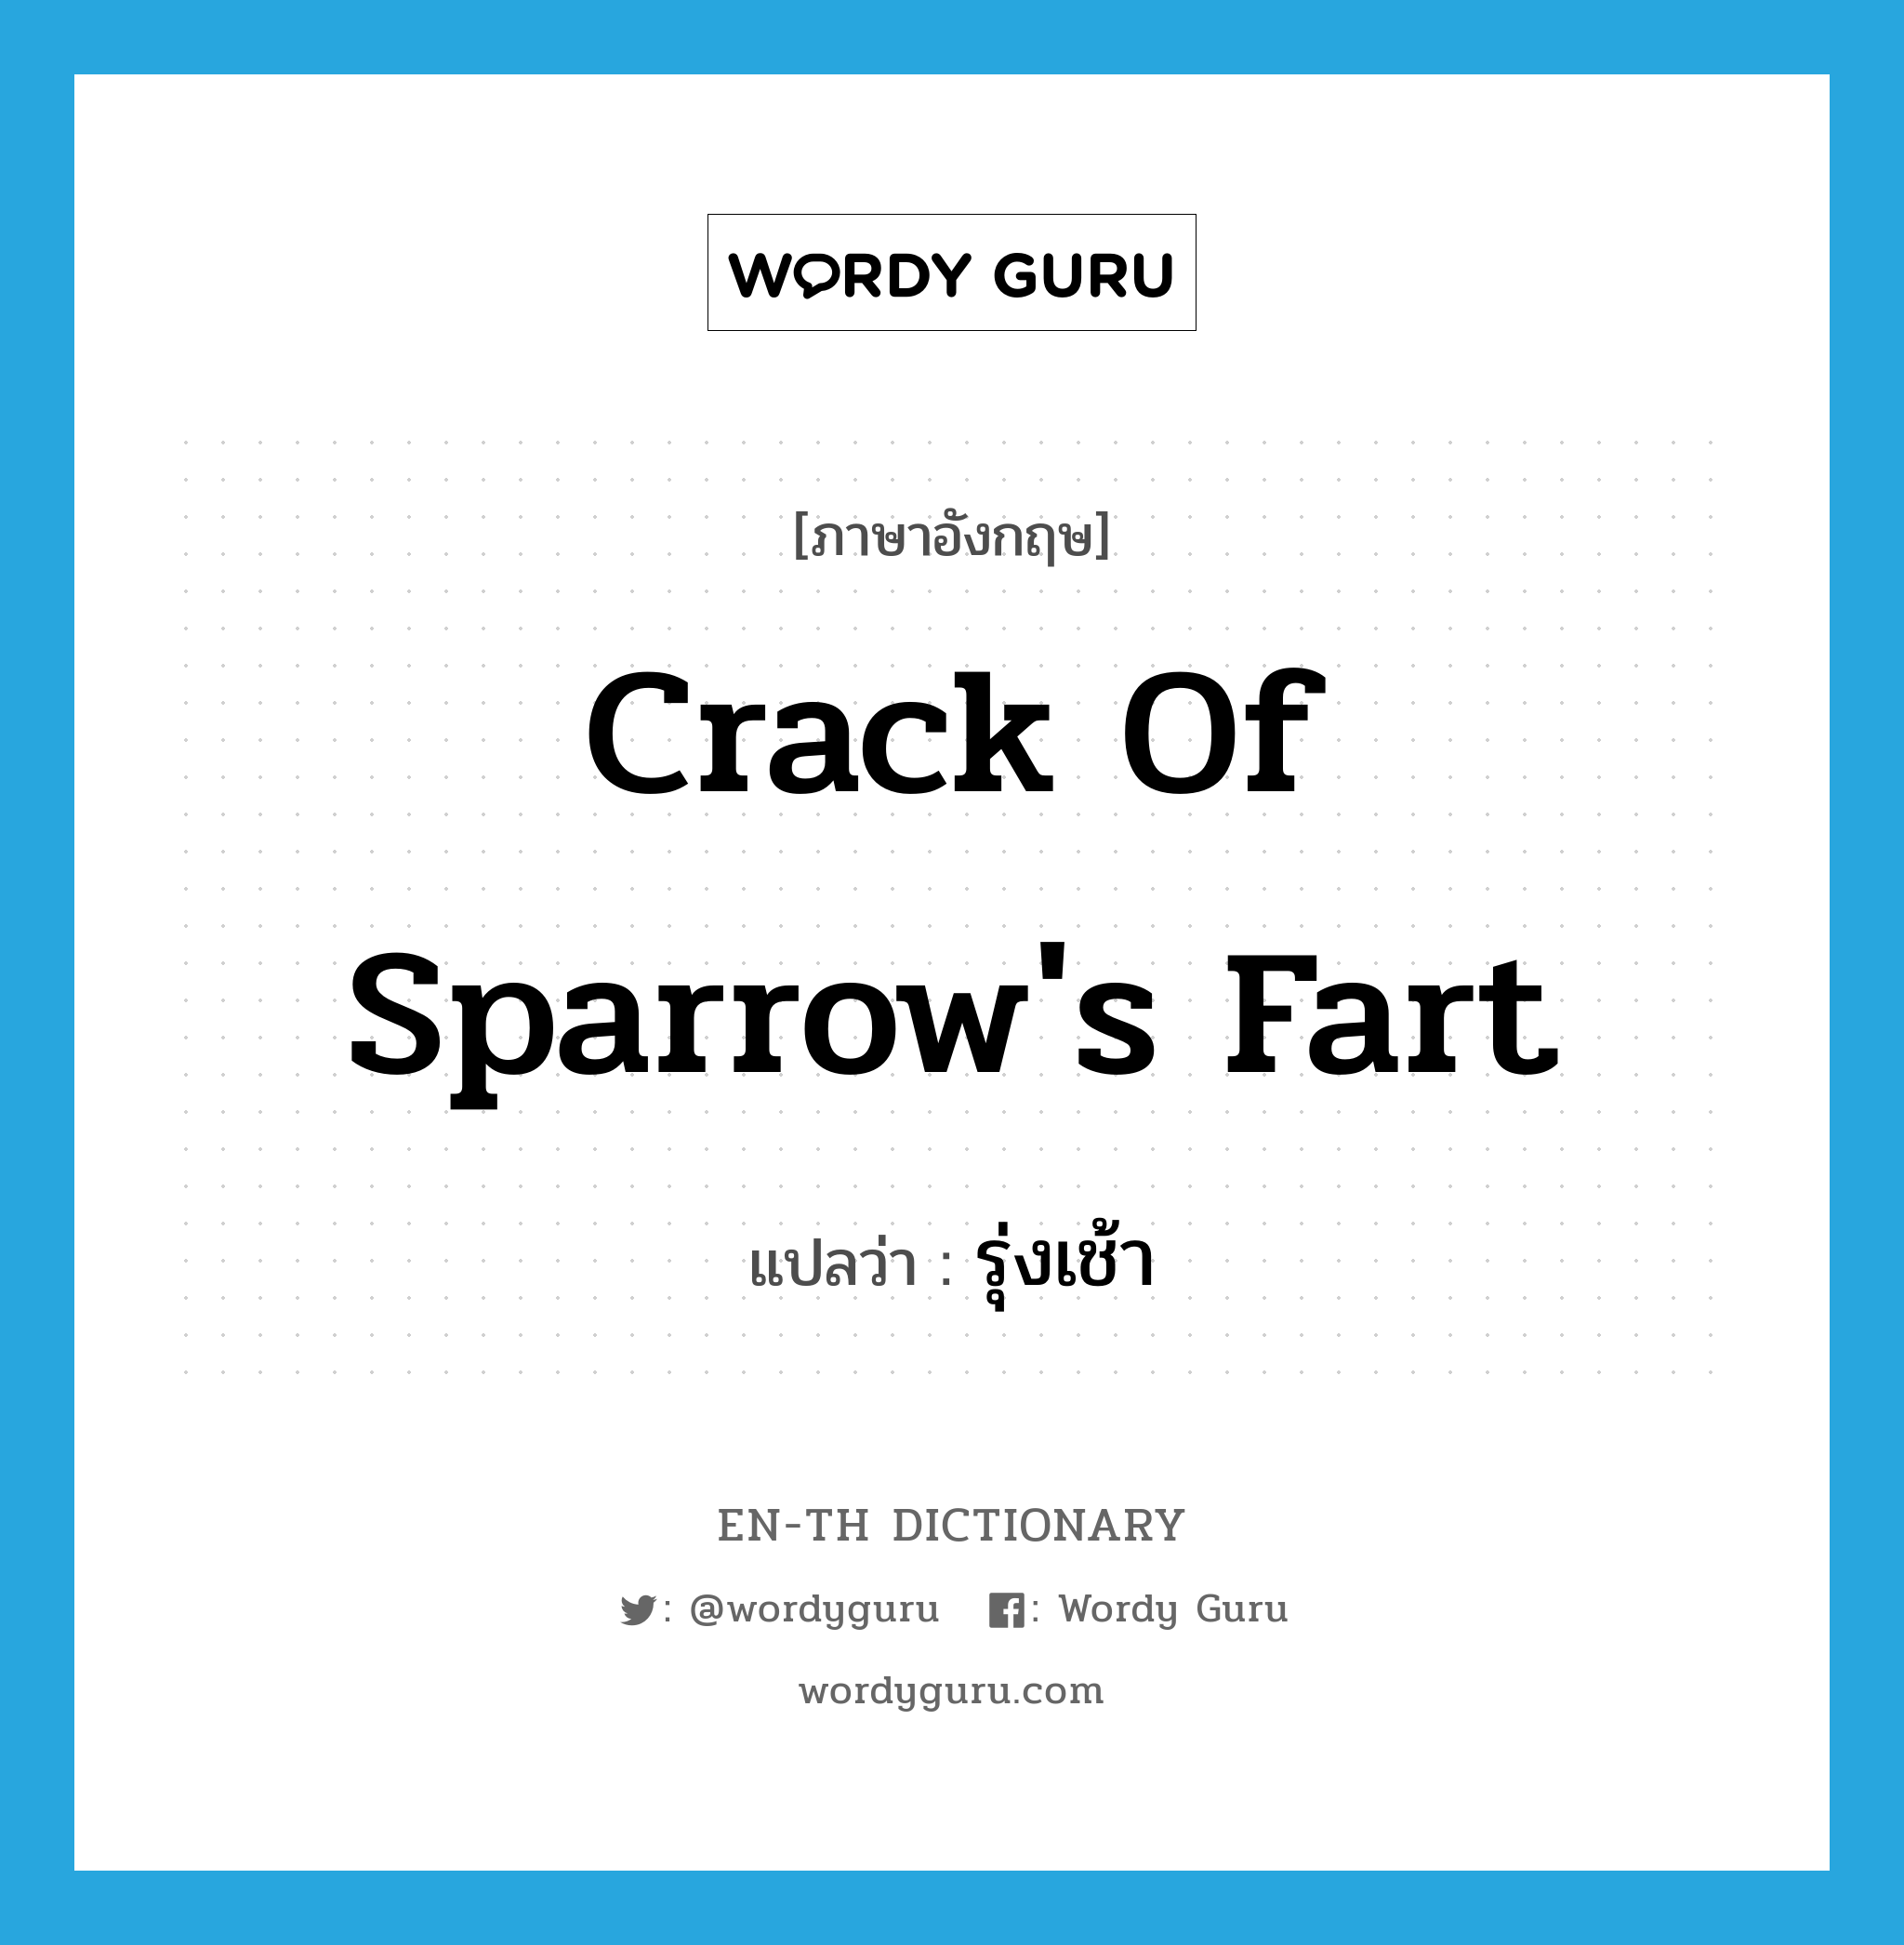 รุ่งเช้า ภาษาอังกฤษ?, คำศัพท์ภาษาอังกฤษ รุ่งเช้า แปลว่า crack of sparrow's fart ประเภท SL หมวด SL